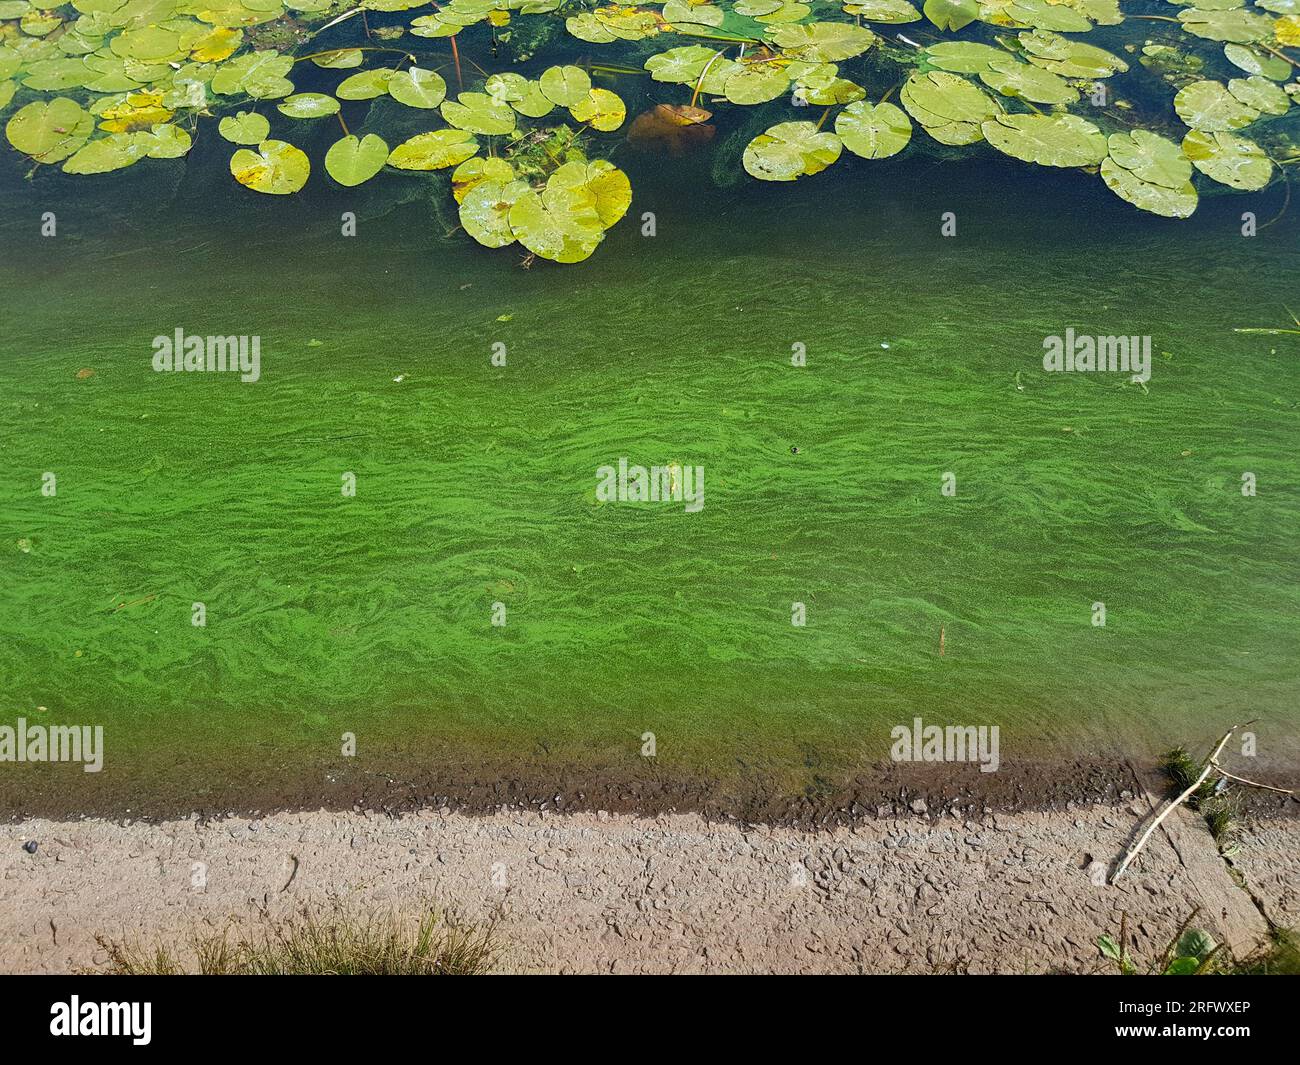 Acqua in fiore nel fiume. Molte ninfee e parte della costa nella cornice, alto angolo di visione. Foto Stock